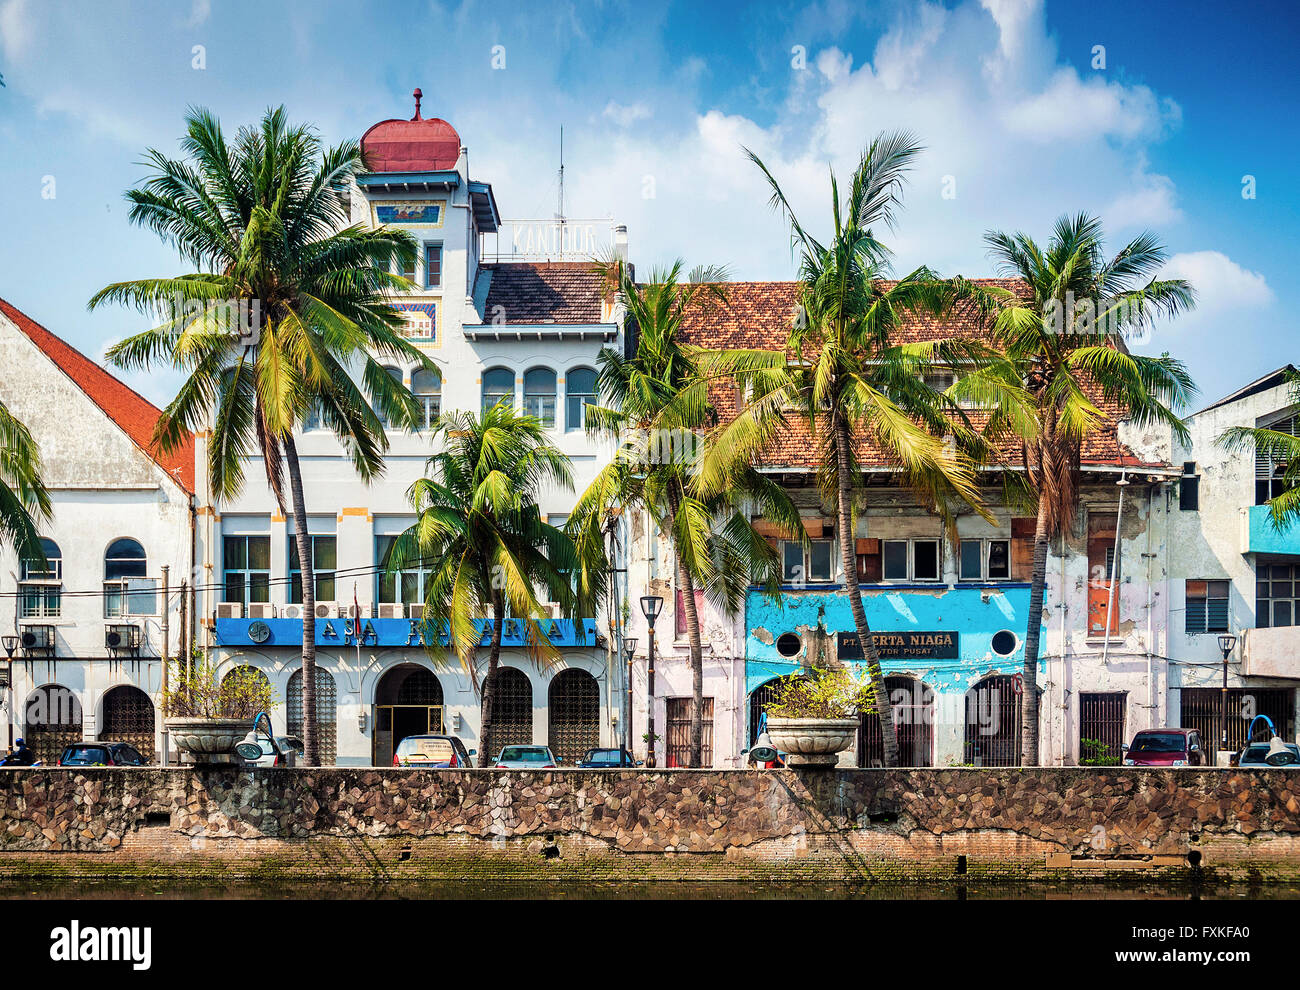 Architettura coloniale olandese edifici nella città vecchia di jakarta in Indonesia Foto Stock